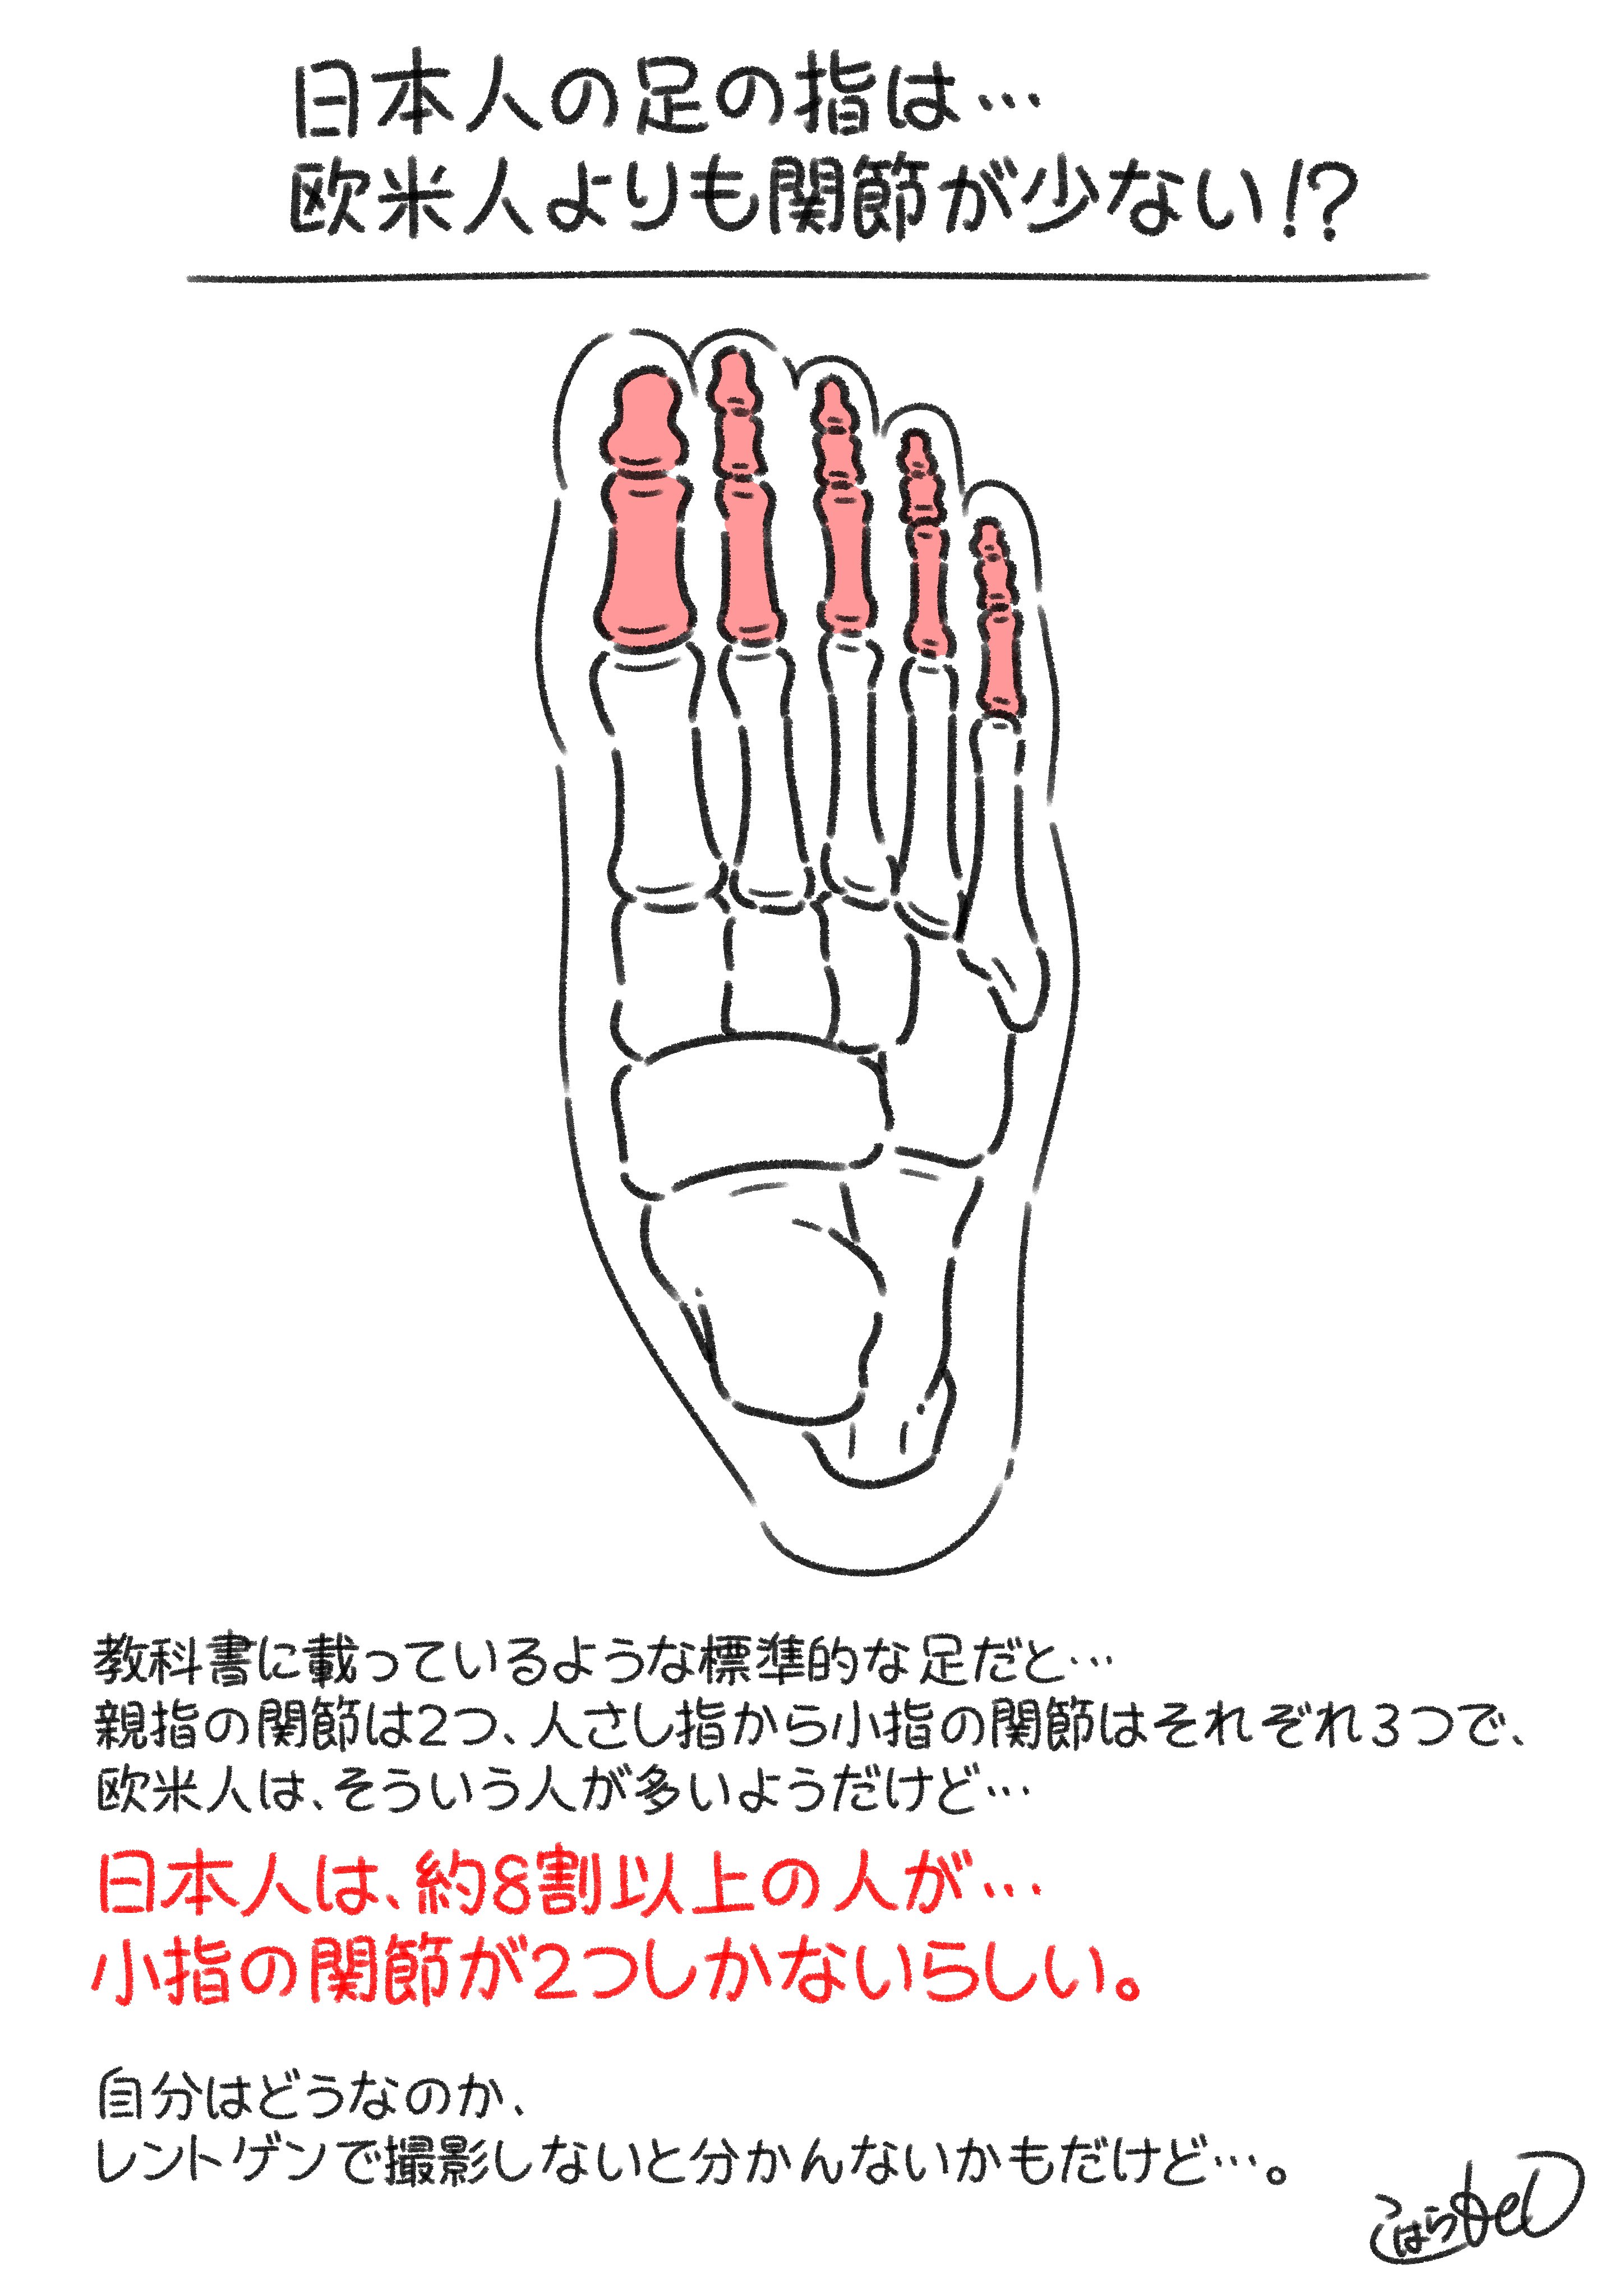 日本人の足の指は関節が少ない コハラモトシ Note